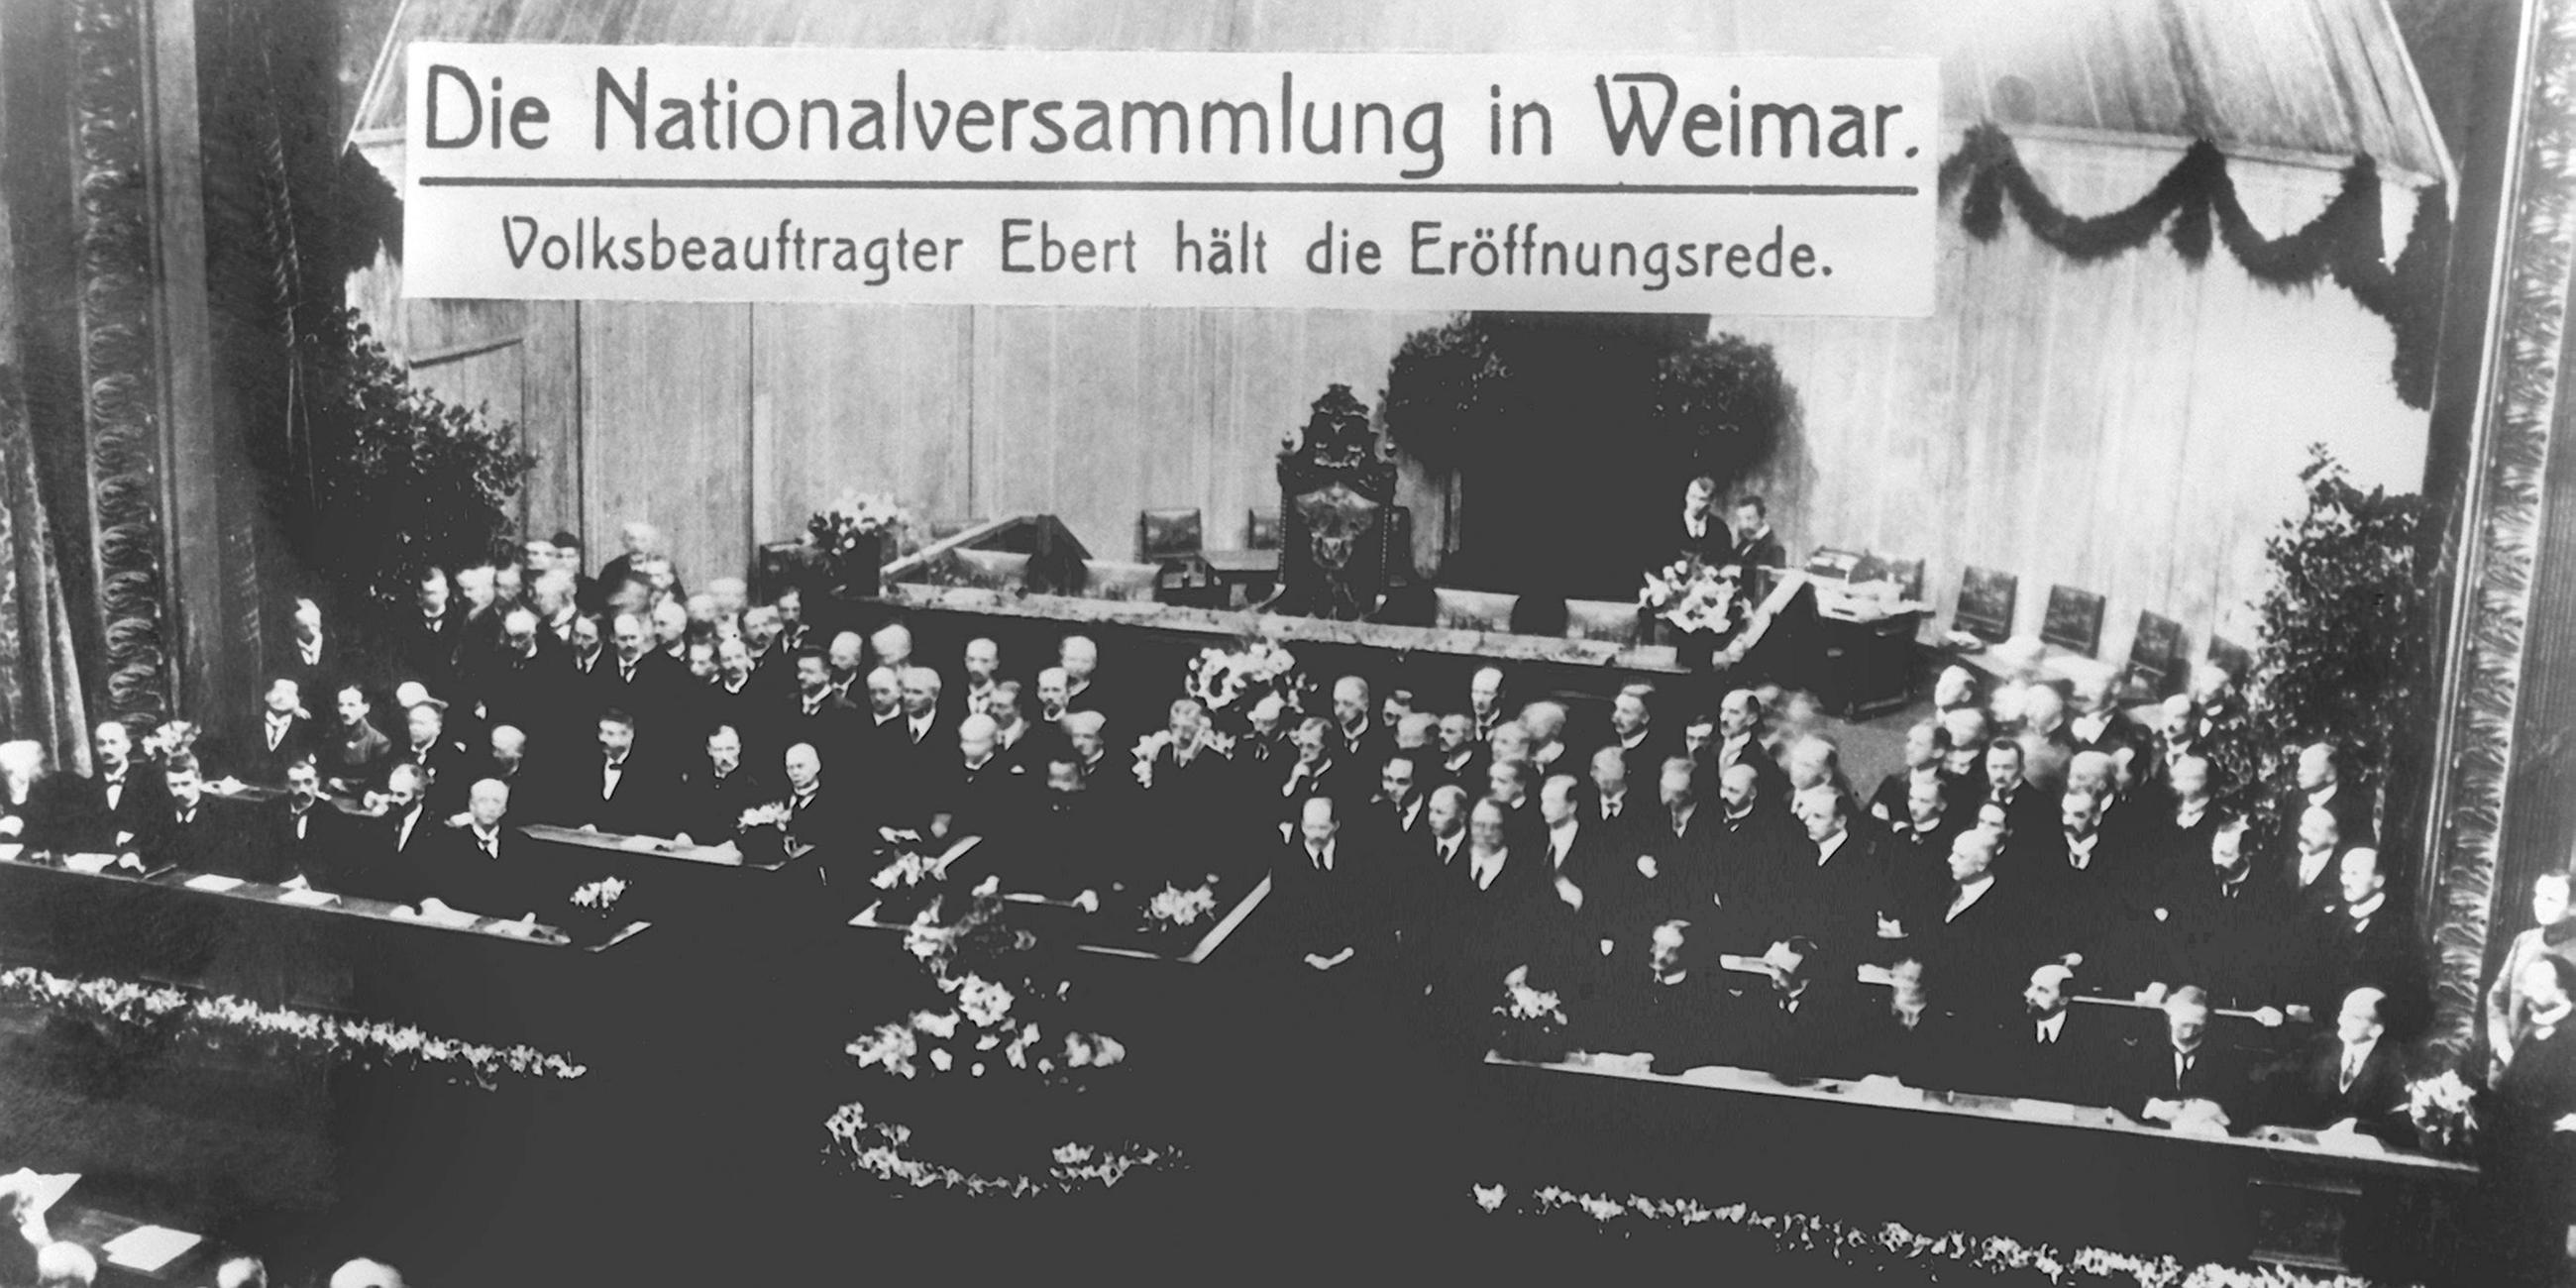 Am 6. Februar 1919 tritt die verfassungsgebende Deutsche Nationalversammlung in Weimar erstmalig zusammen, die Eröffnungsrede hält der Volksbeauftragte Friedrich Ebert.